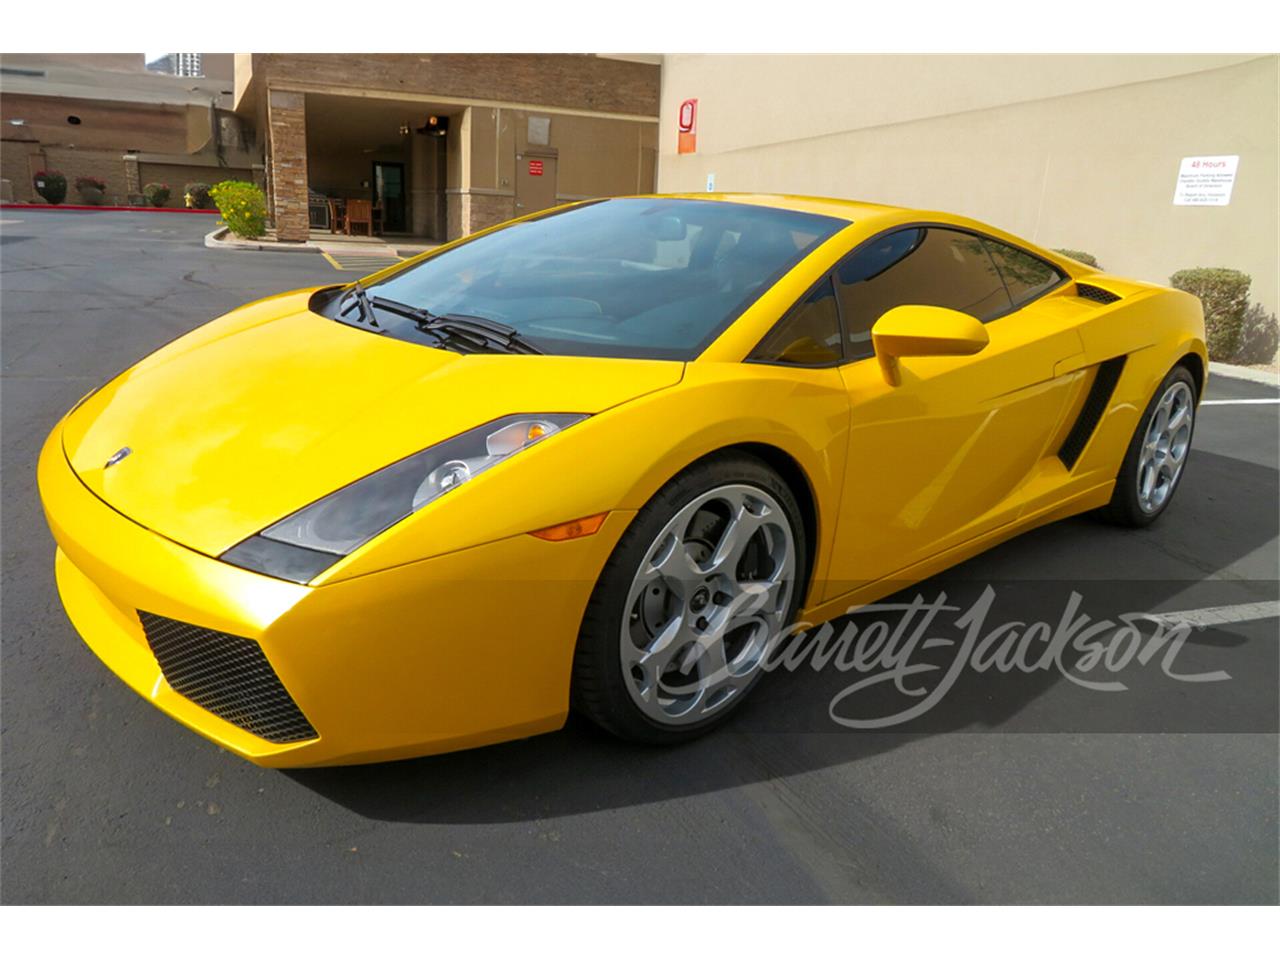 For Sale at Auction: 2005 Lamborghini Gallardo in Scottsdale, Arizona for sale in Scottsdale, AZ